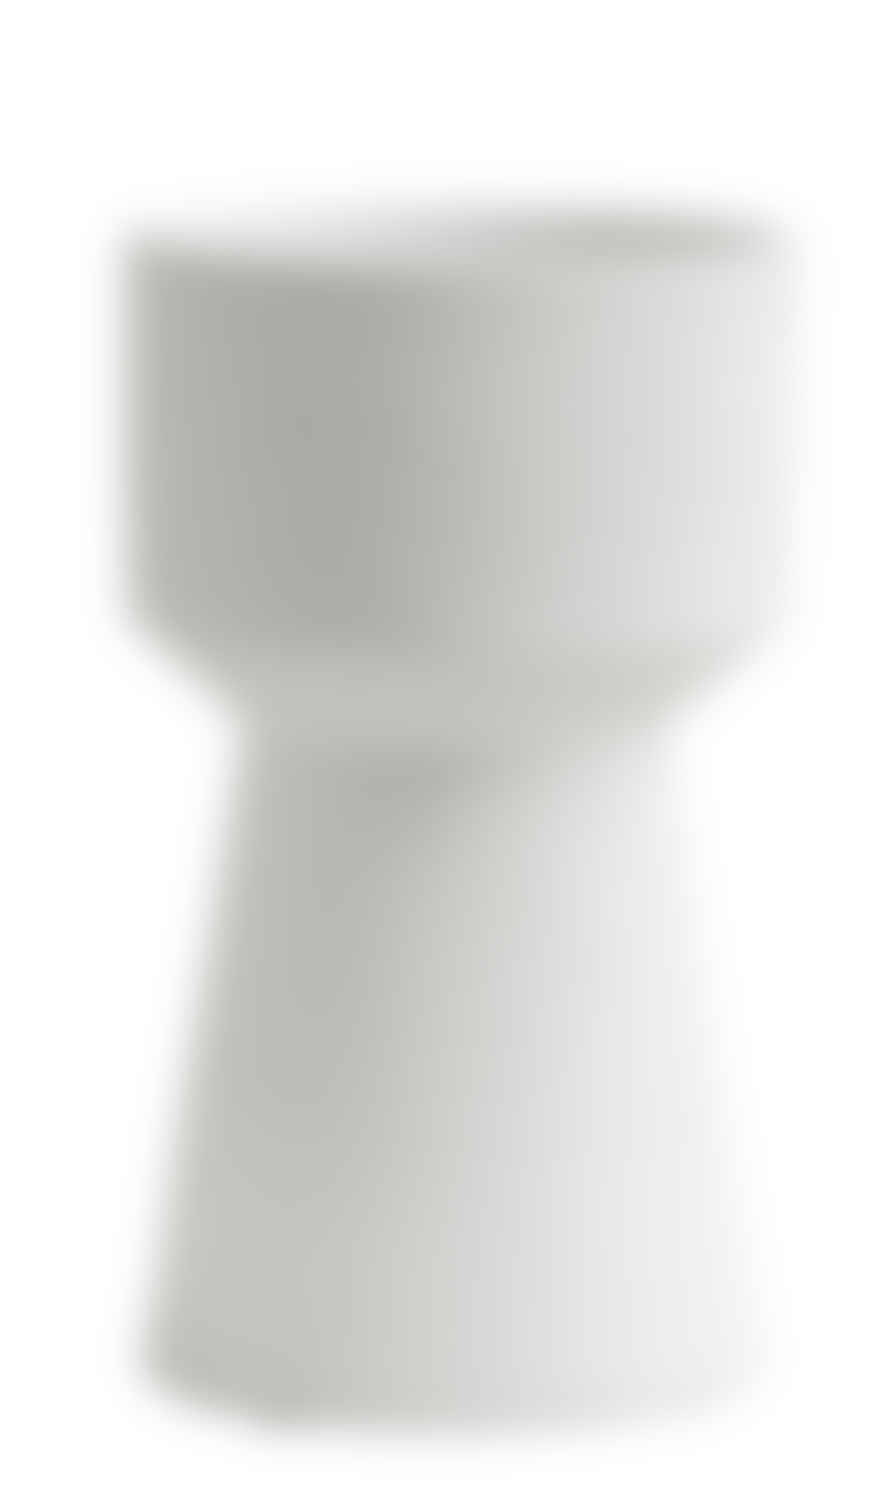 Nordal 14xh26.5cm Vase in White Ceramic